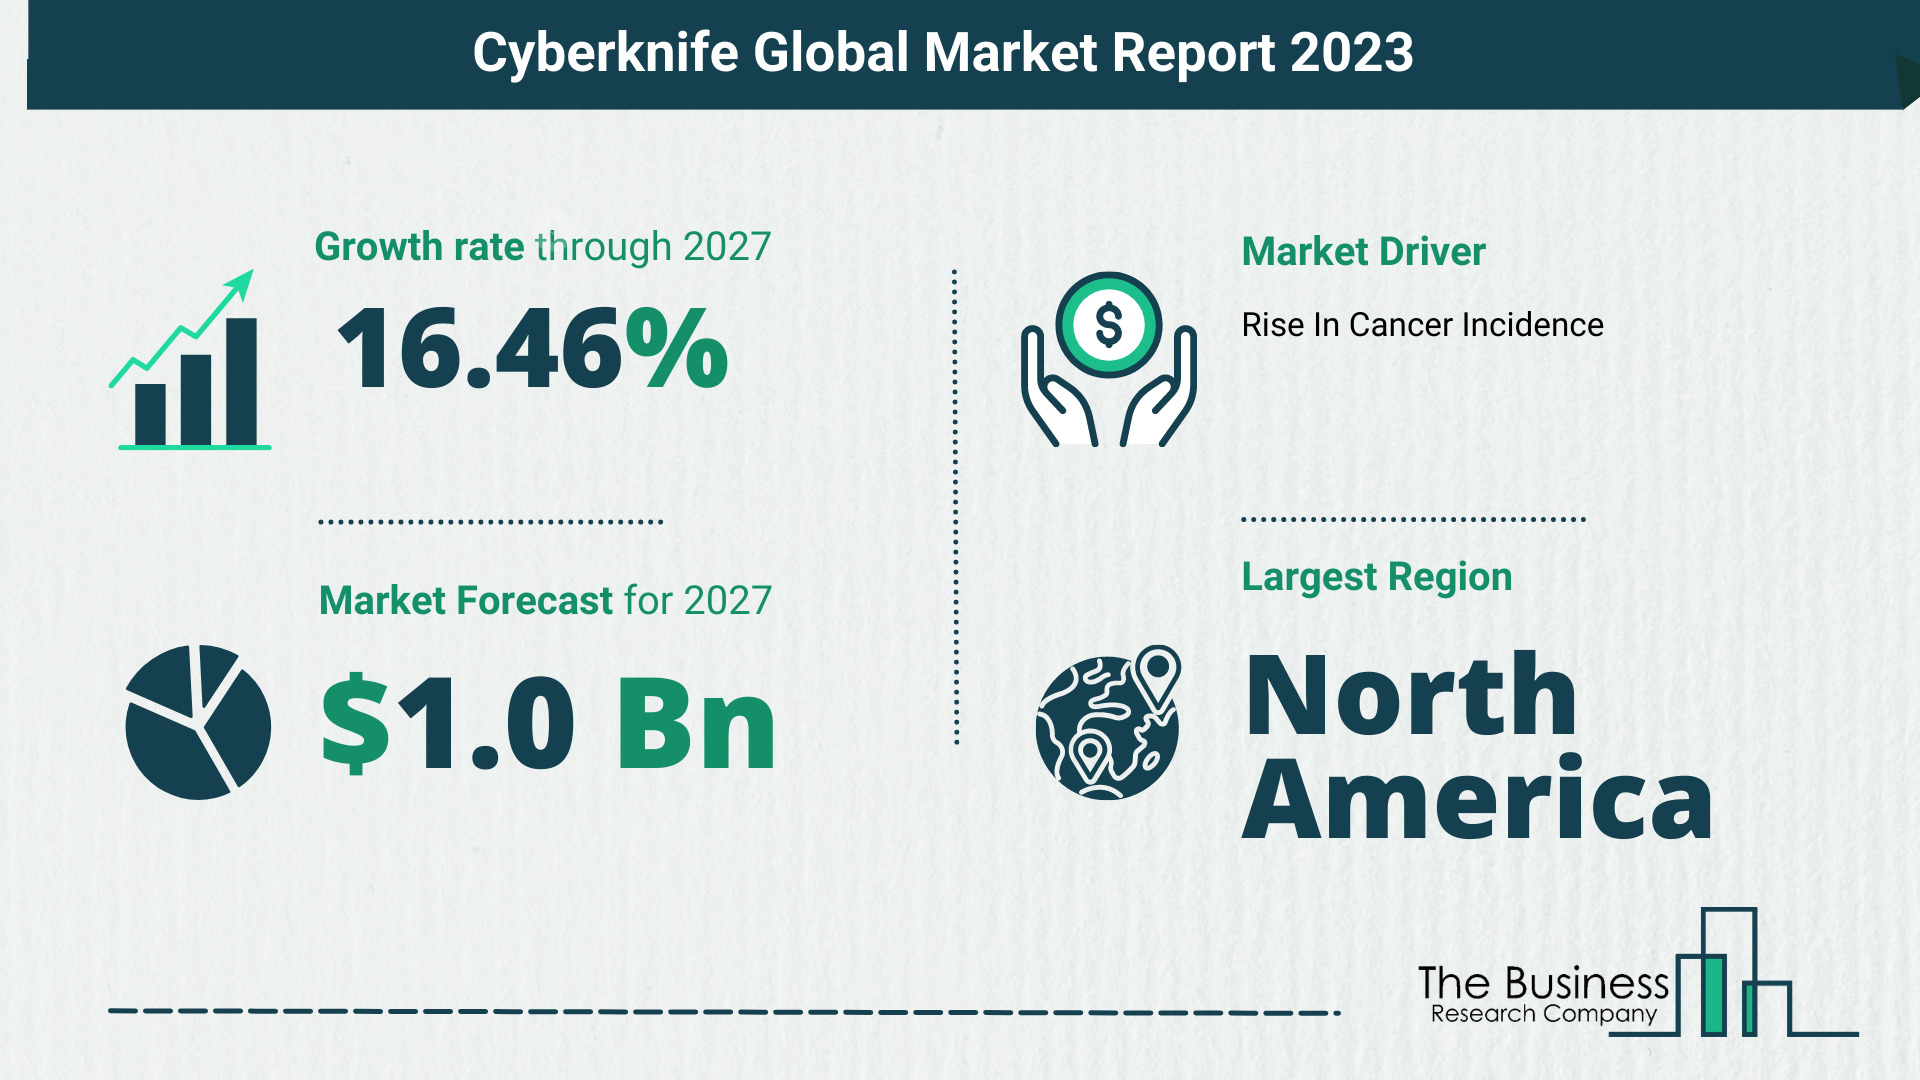 Global Cyberknife Market Size